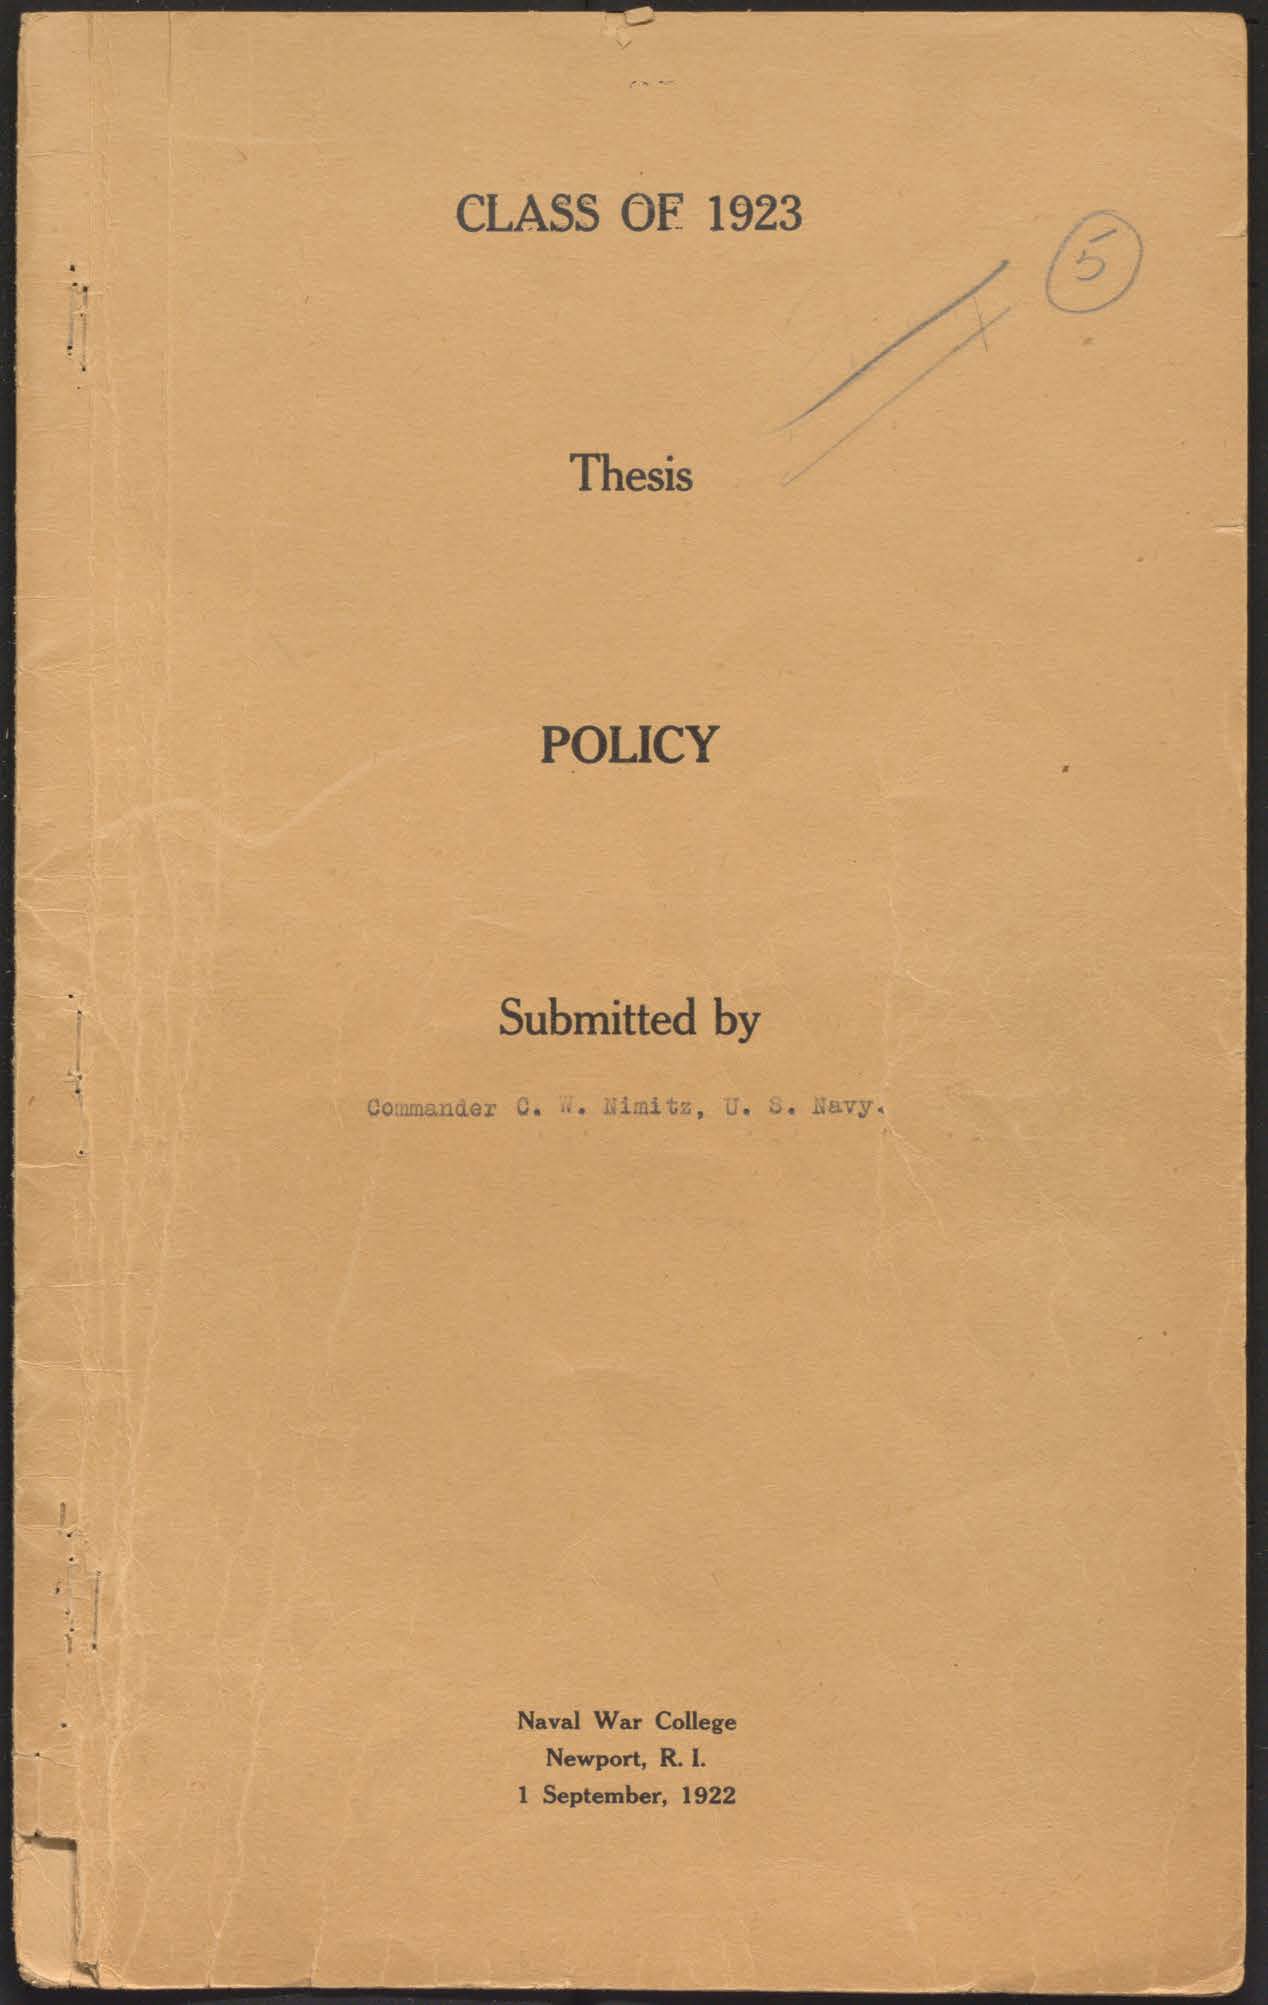 Policy, C.W. Nimitz